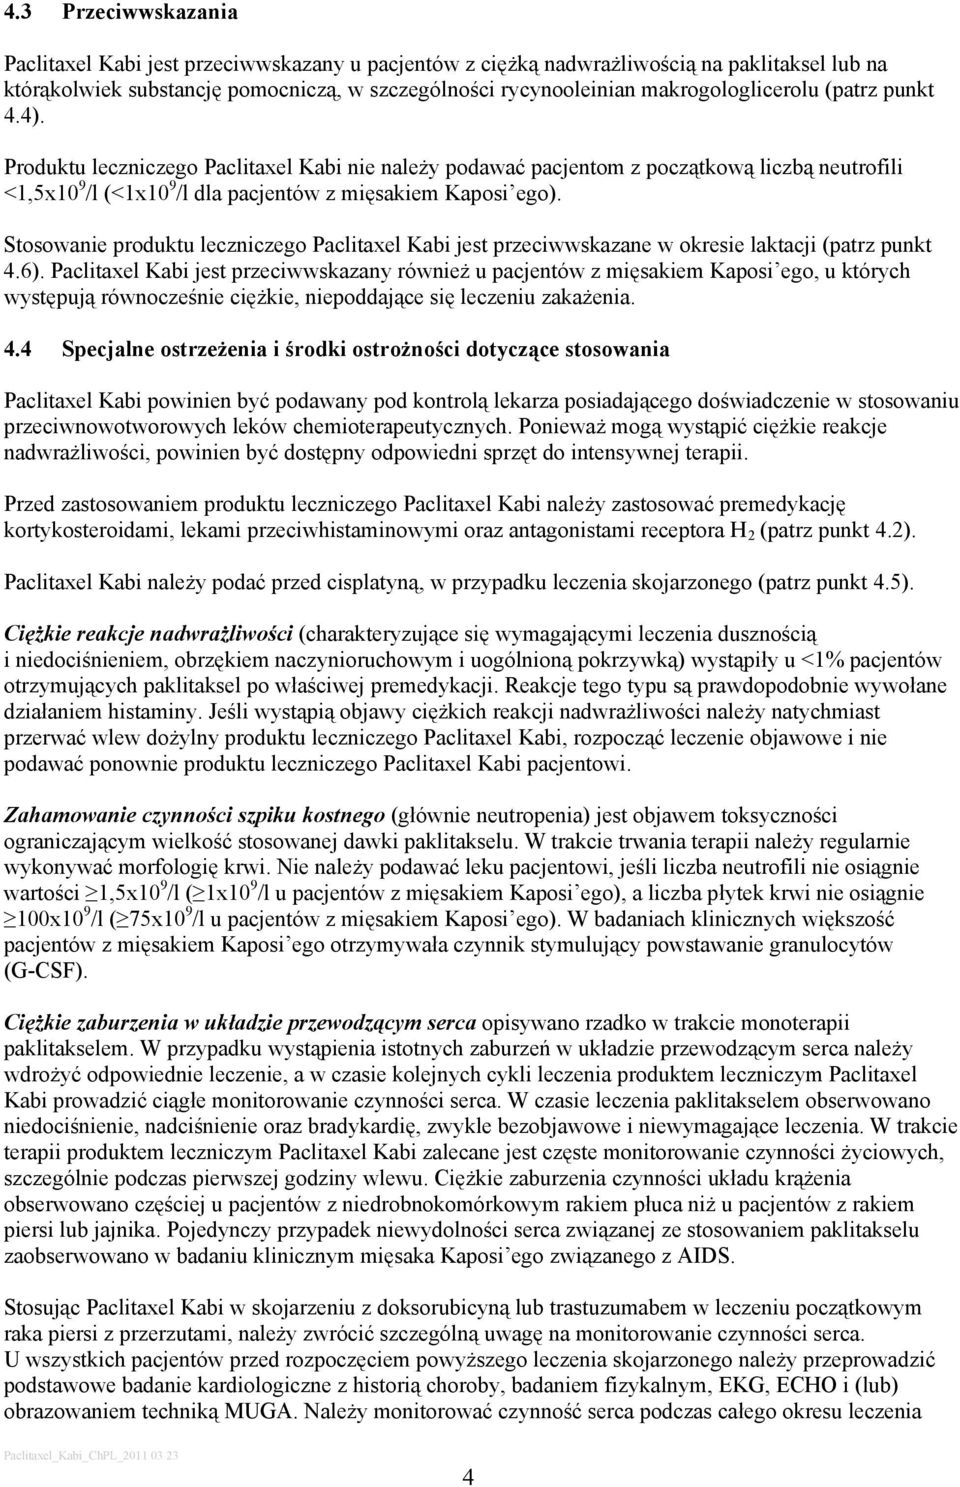 Stosowanie produktu leczniczego Paclitaxel Kabi jest przeciwwskazane w okresie laktacji (patrz punkt 4.6).